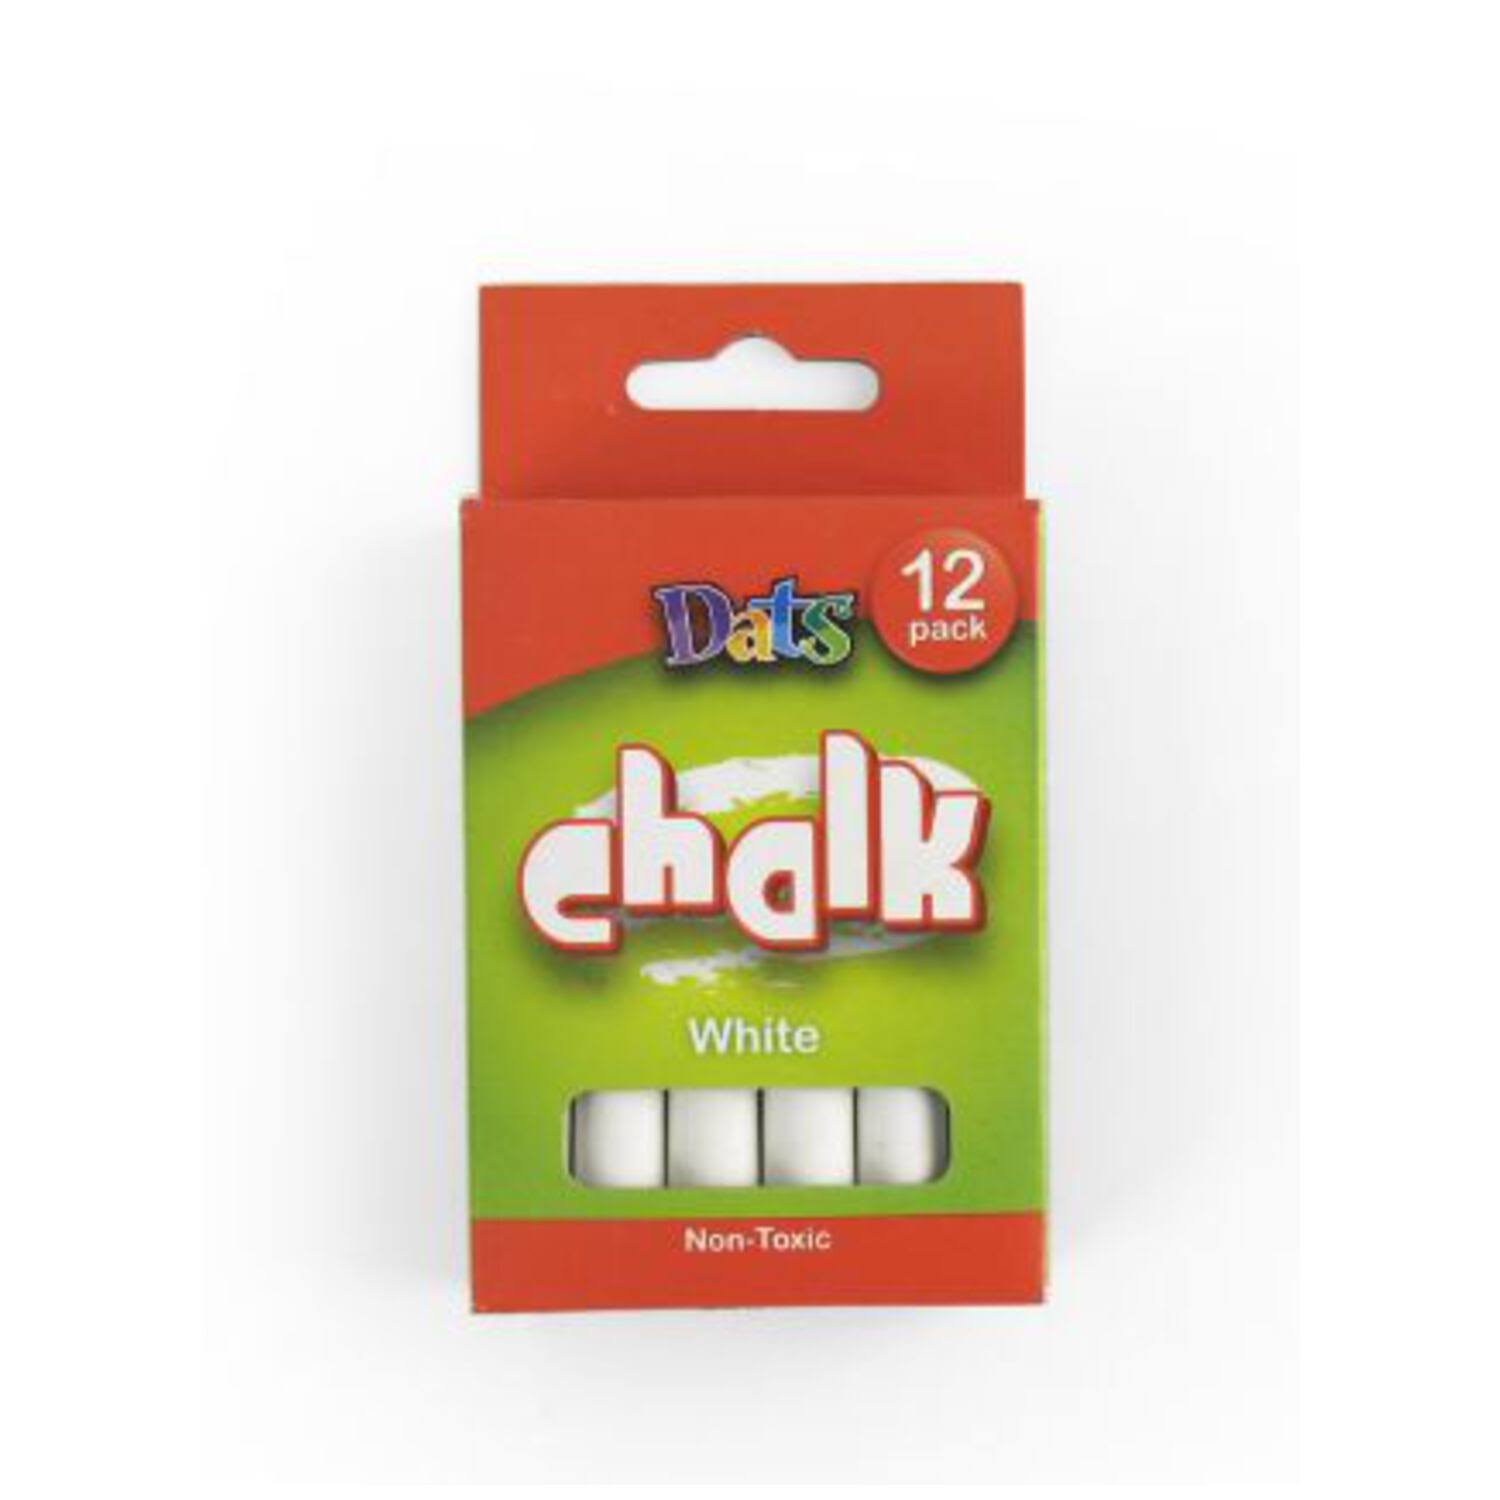 Crayola Chalk - White, 12 Pack